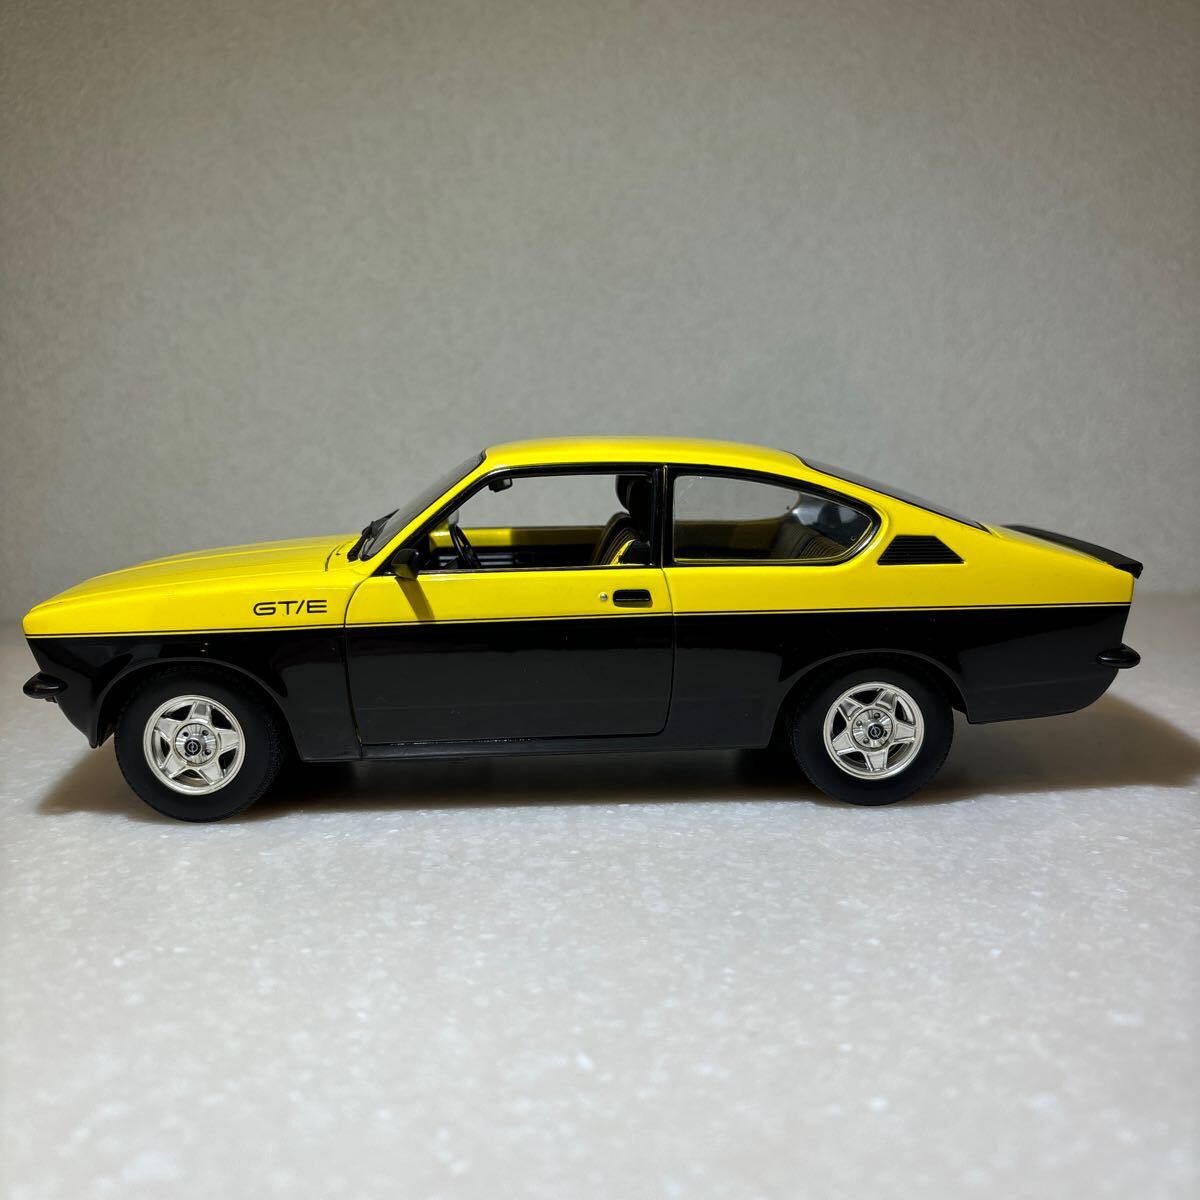 1/18 「オペルカデット C GT/E」1976年モデル イエロー・ブラック ミニチャンプスの画像5